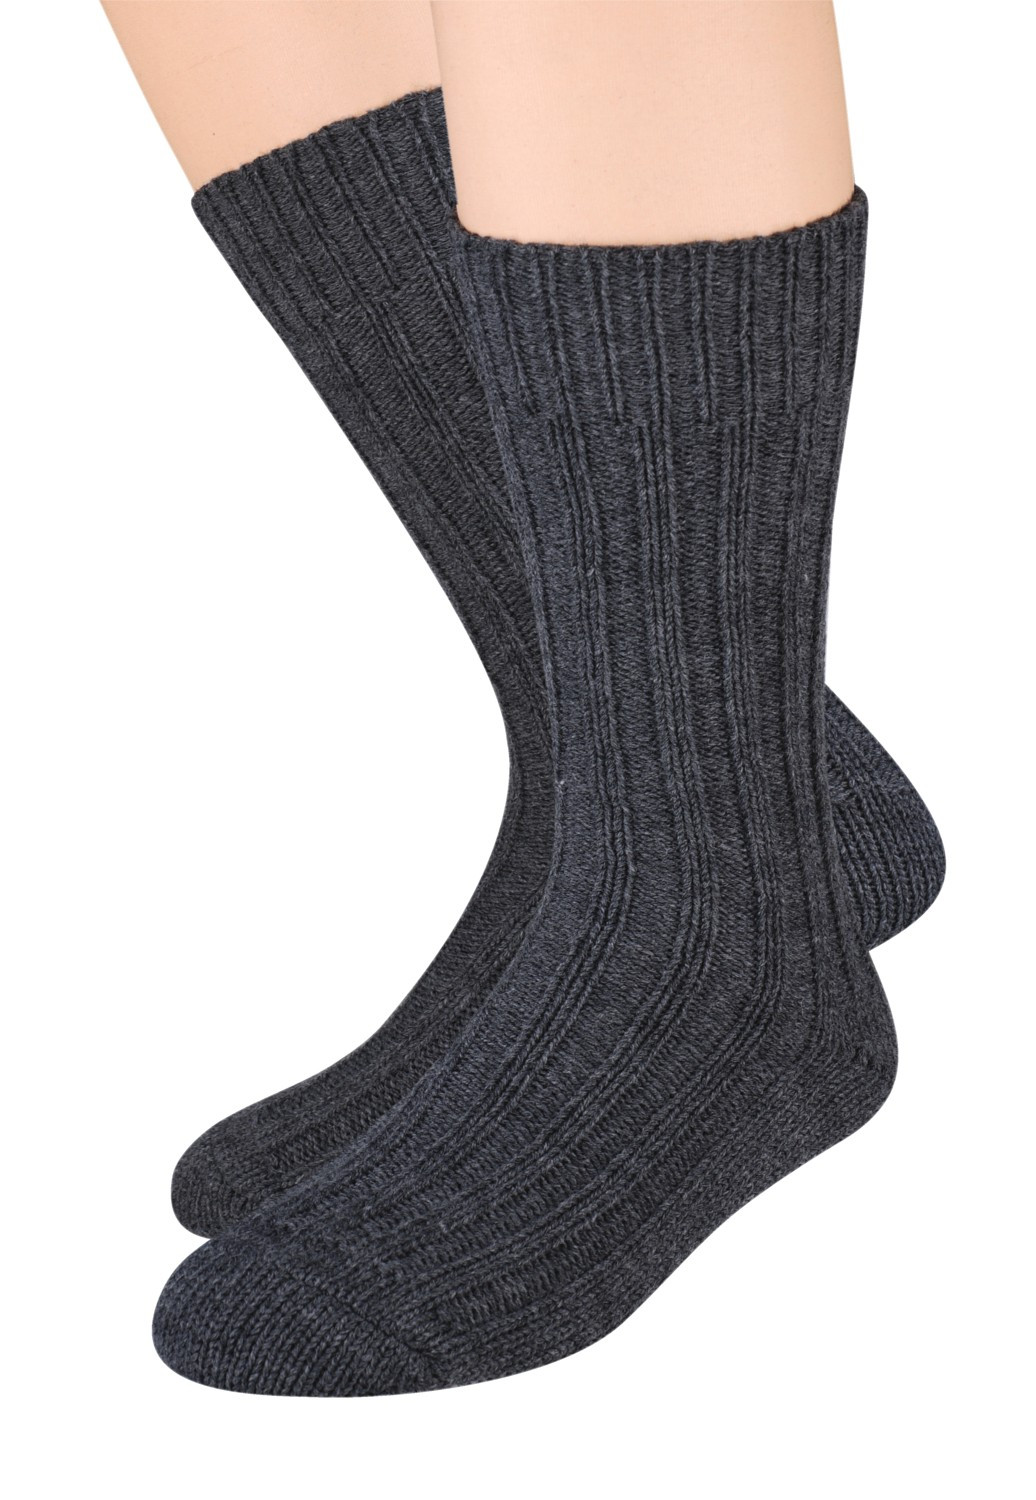 Pánské vlněné ponožky Steven art.085 41-46 černá 41-43